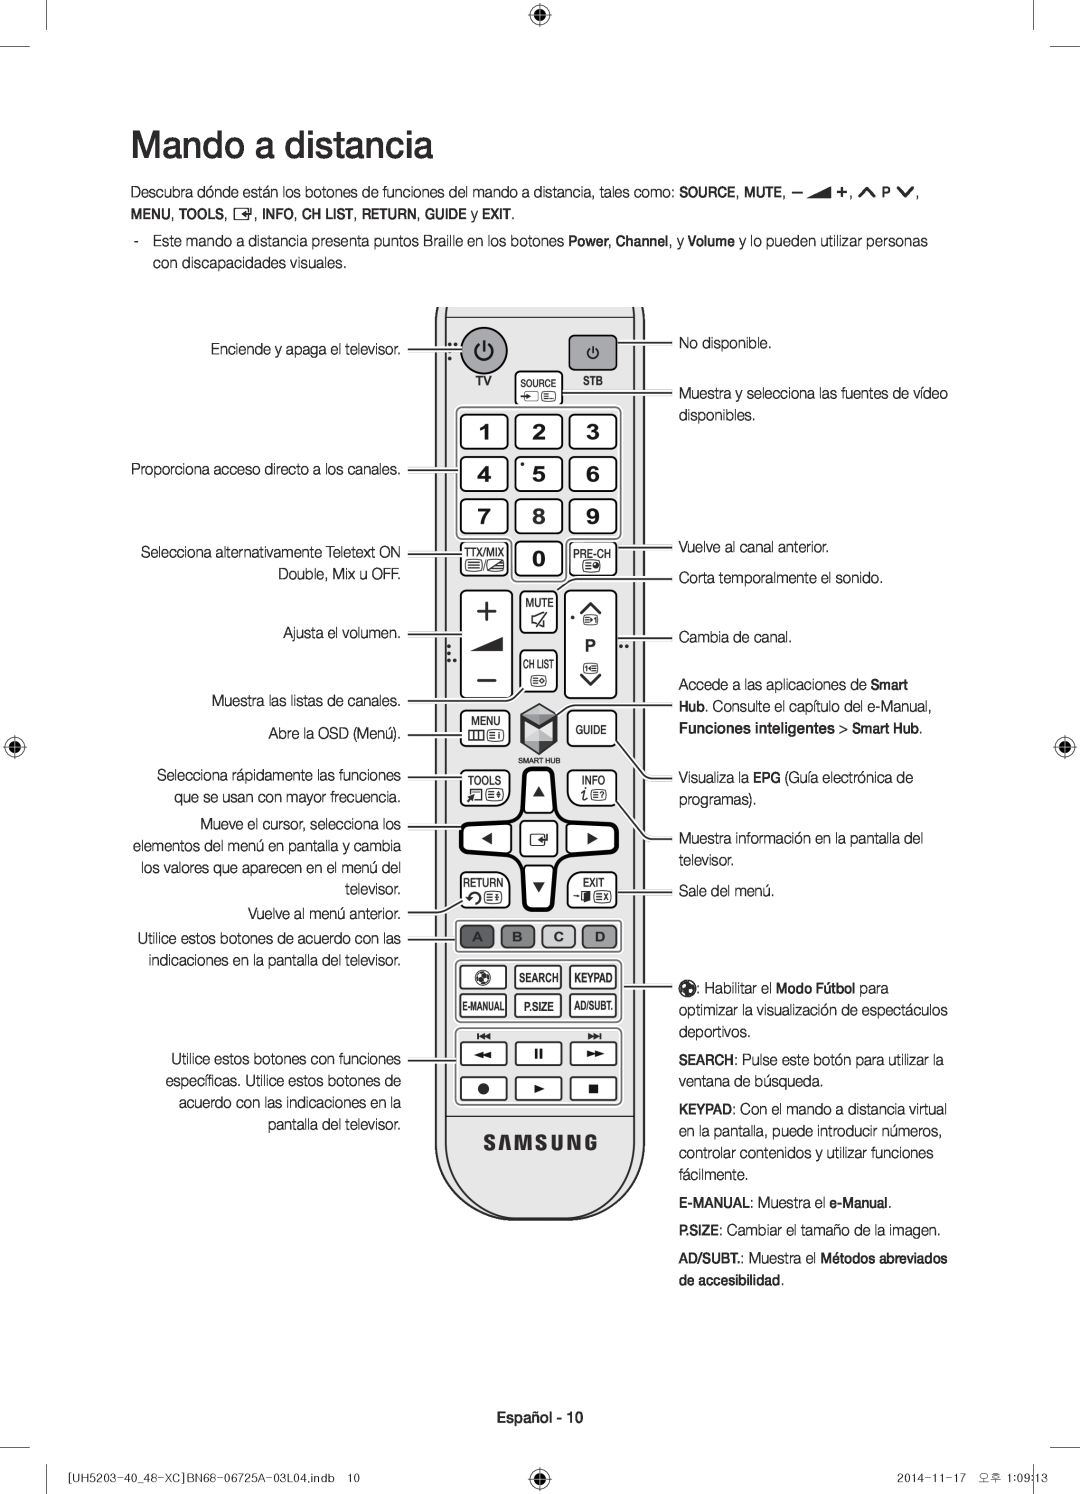 Samsung UE40H5203AWXXC, UE48H5203AWXXC manual Mando a distancia, E-MANUAL Muestra el e-Manual, de accesibilidad 